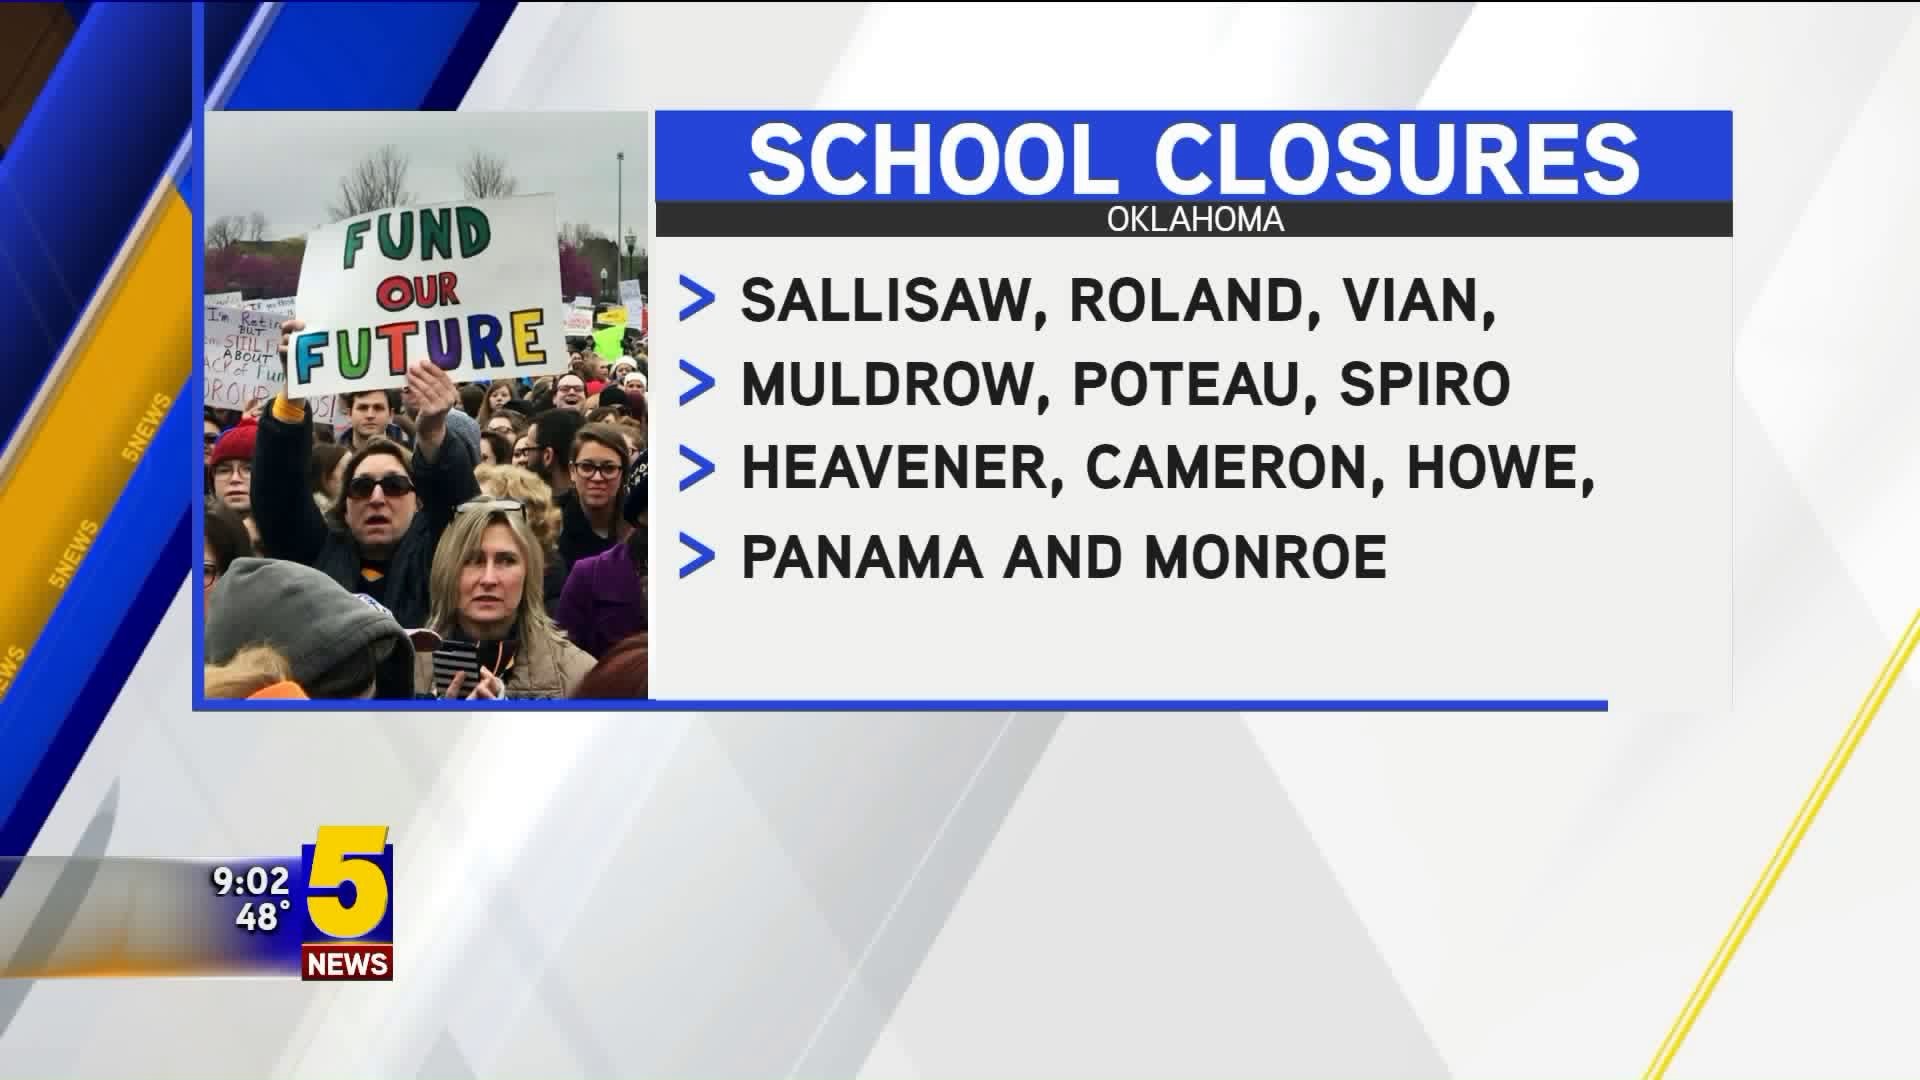 Oklahoma School Closures